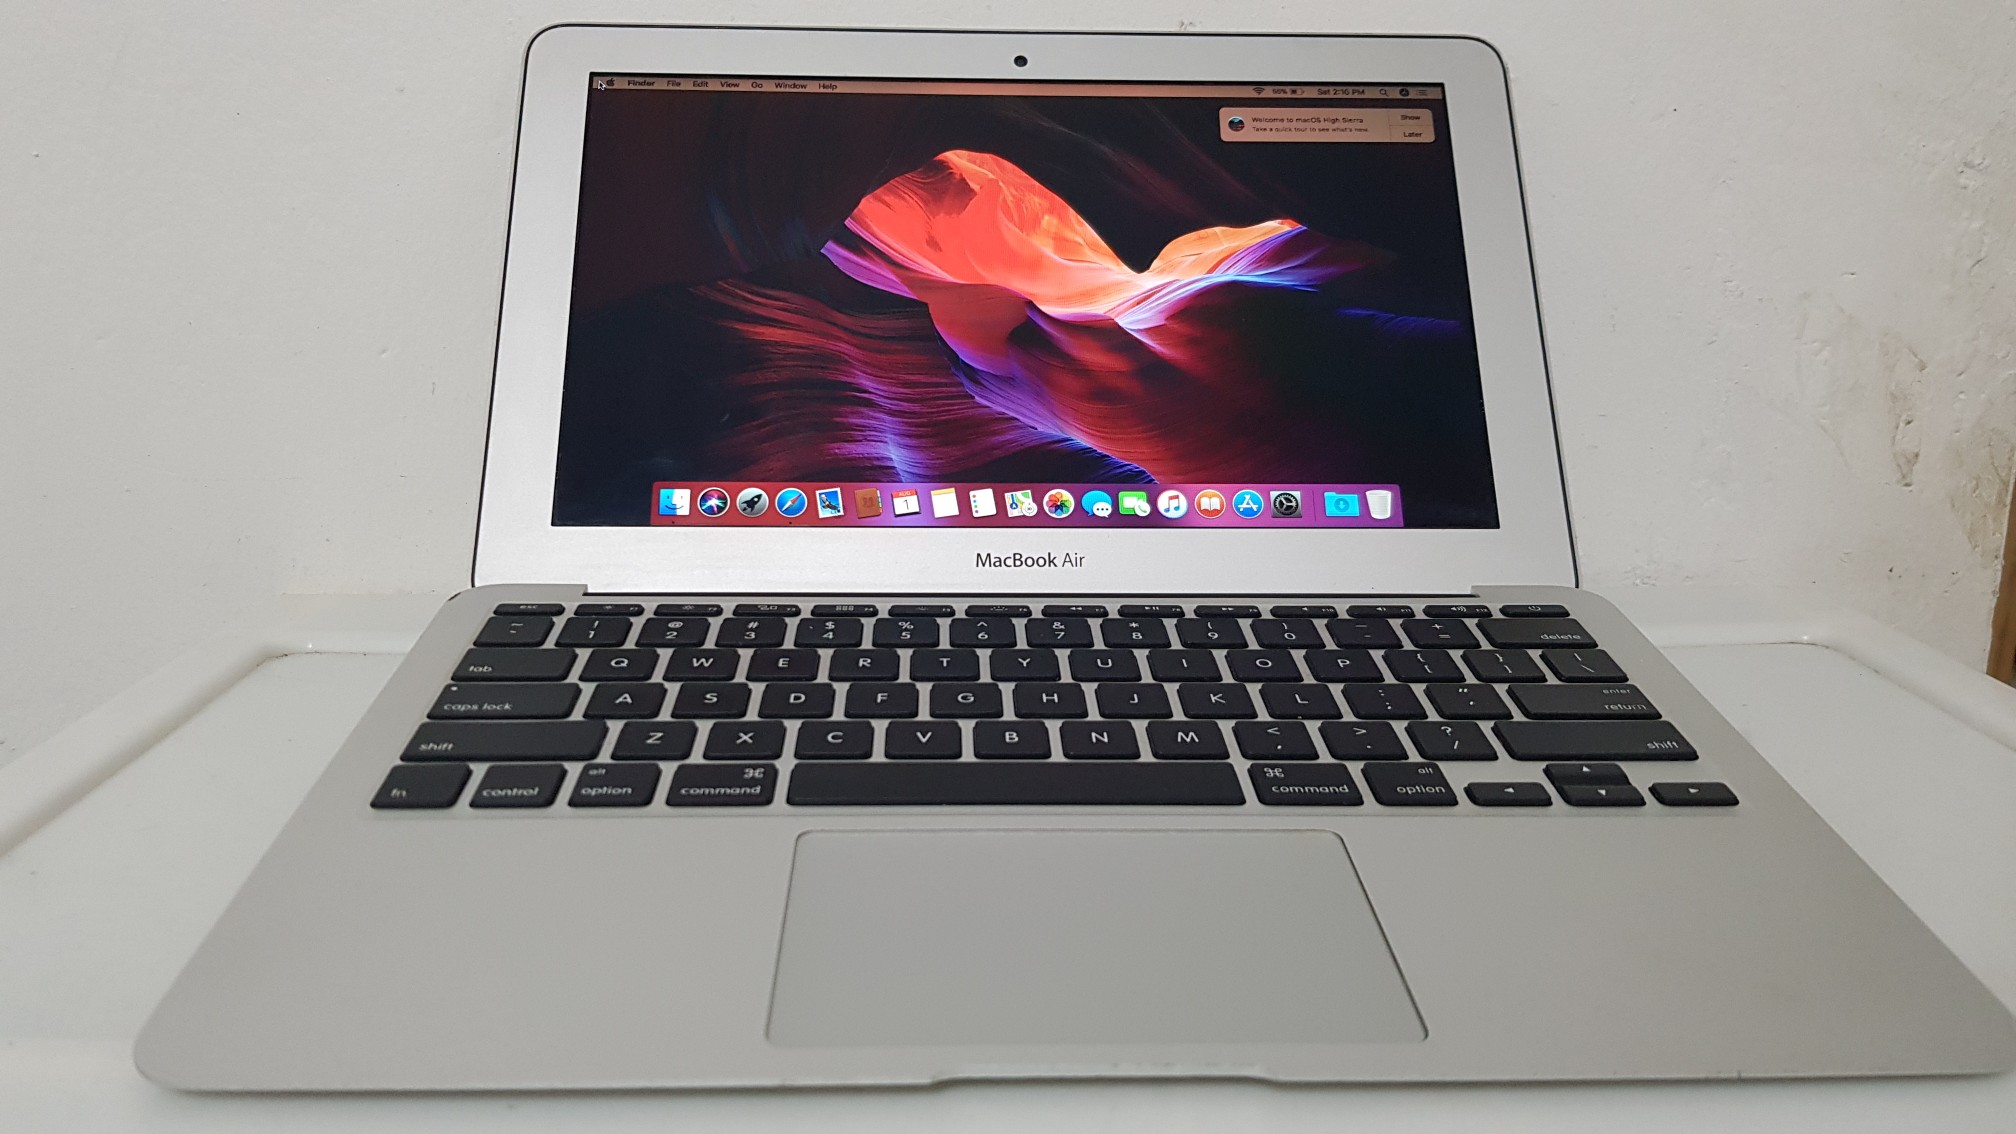 computadoras y laptops - Macbook Air año 2015 13 Pulg Core i5 Ram 4gb Disco 128gb  0